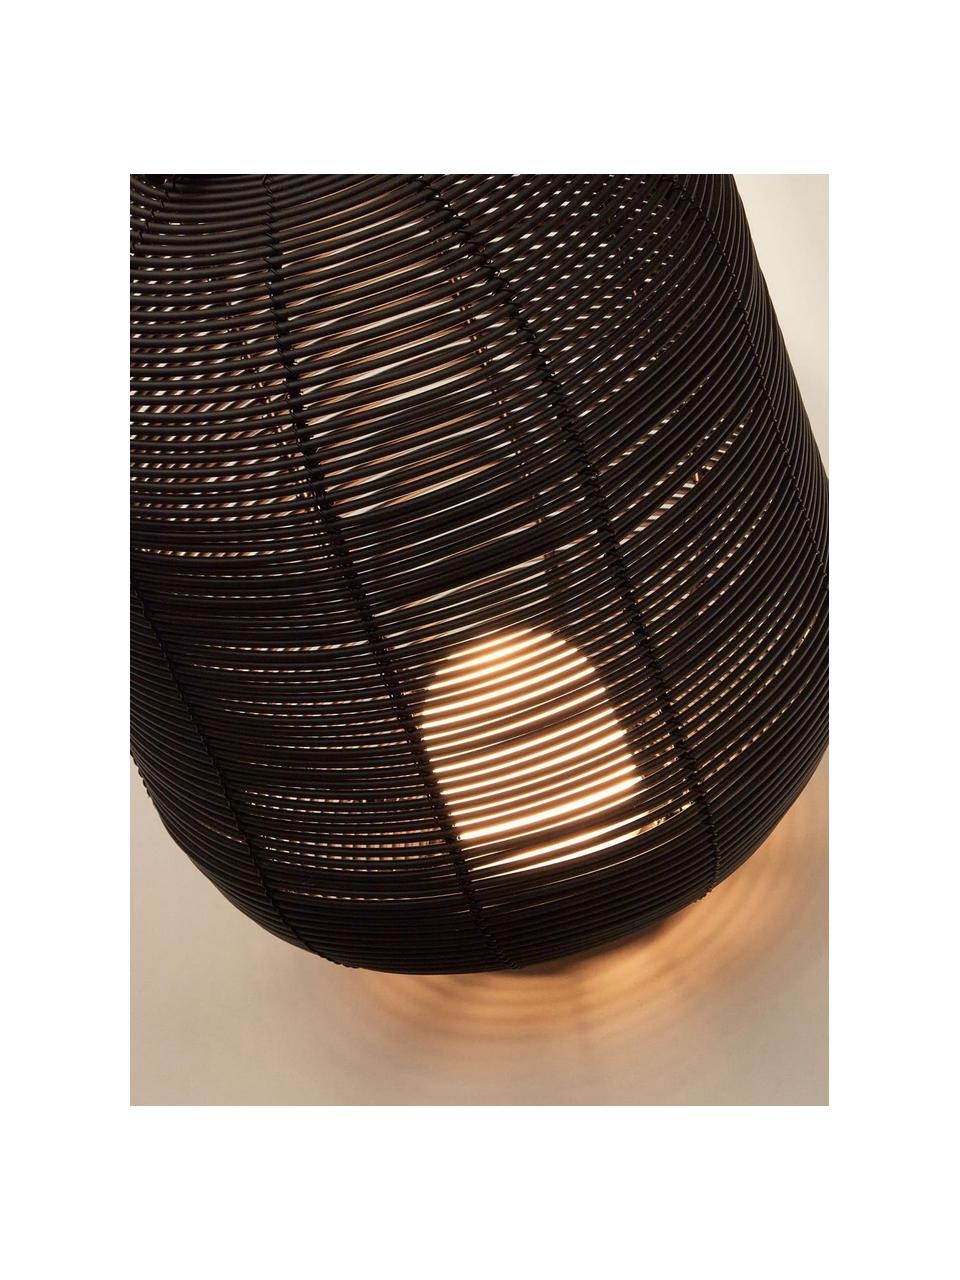 Mobile LED-Aussentischlampe Saranella, H 37 cm, Kunststoff, Metall, beschichtet, Schwarz, Ø 24 x H 37 cm